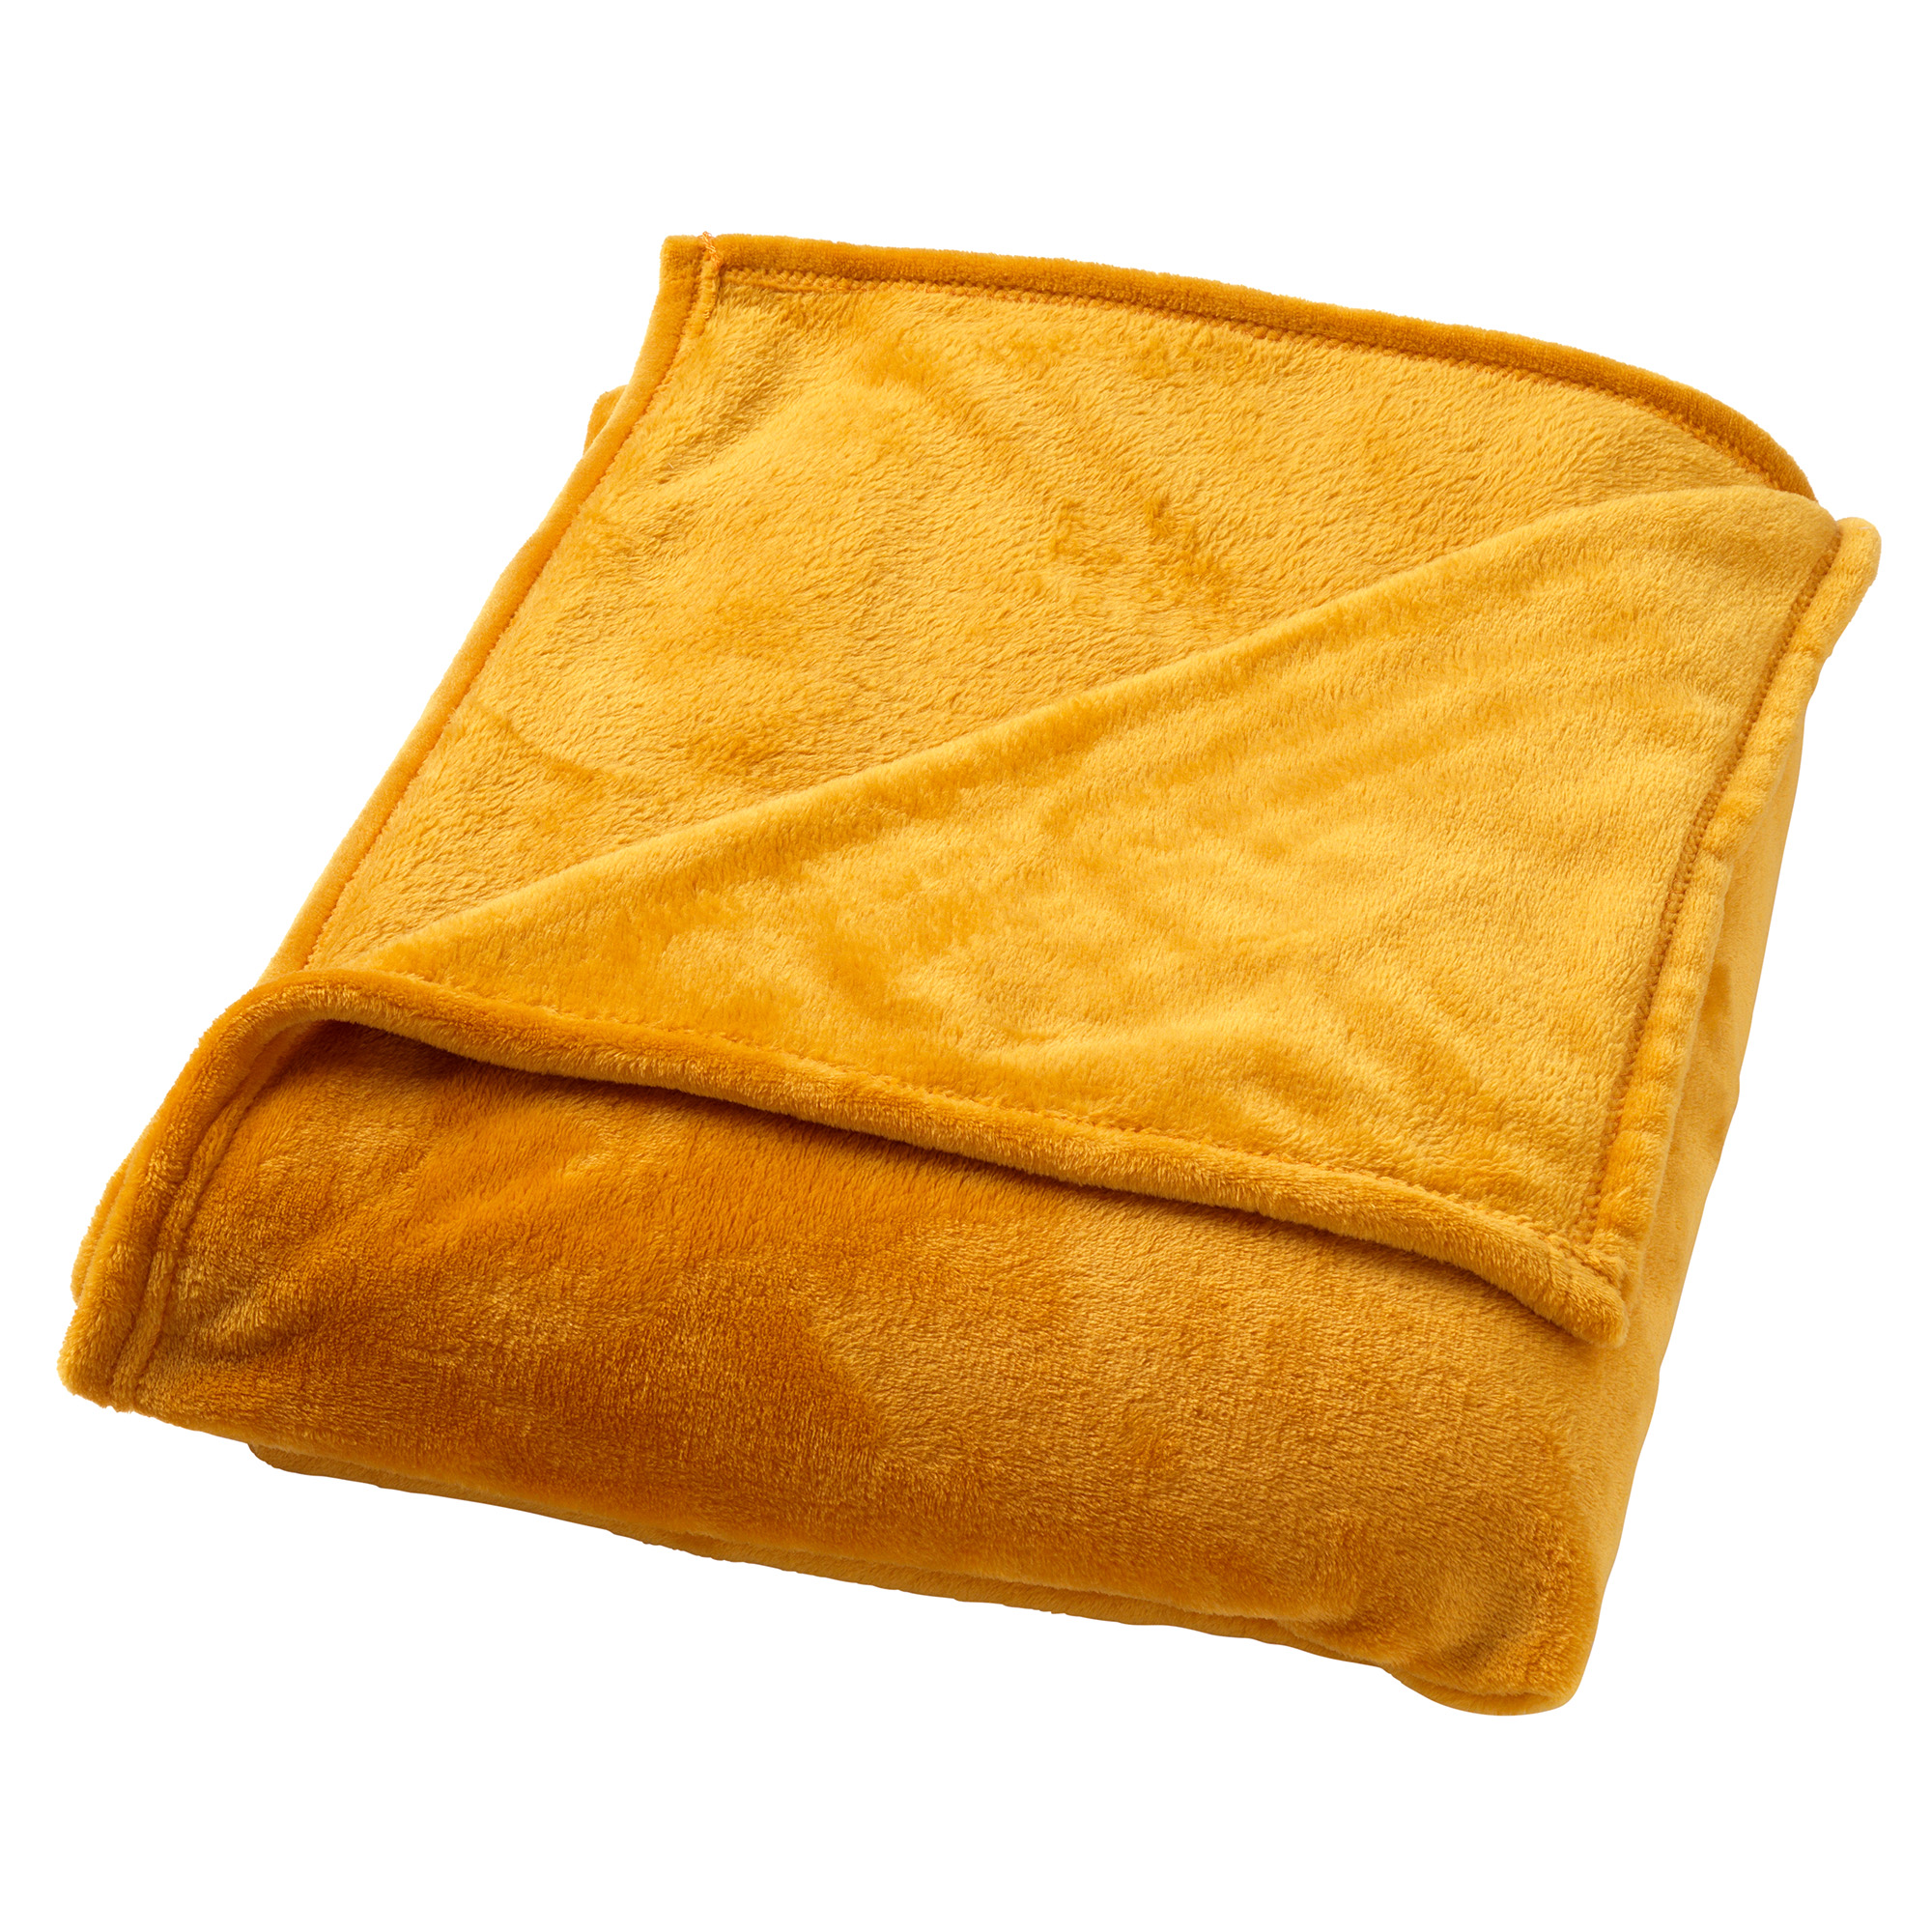 CHARLIE - Plaid 200x220 cm - extra grote fleece deken - effen kleur - Golden Glow - geel 